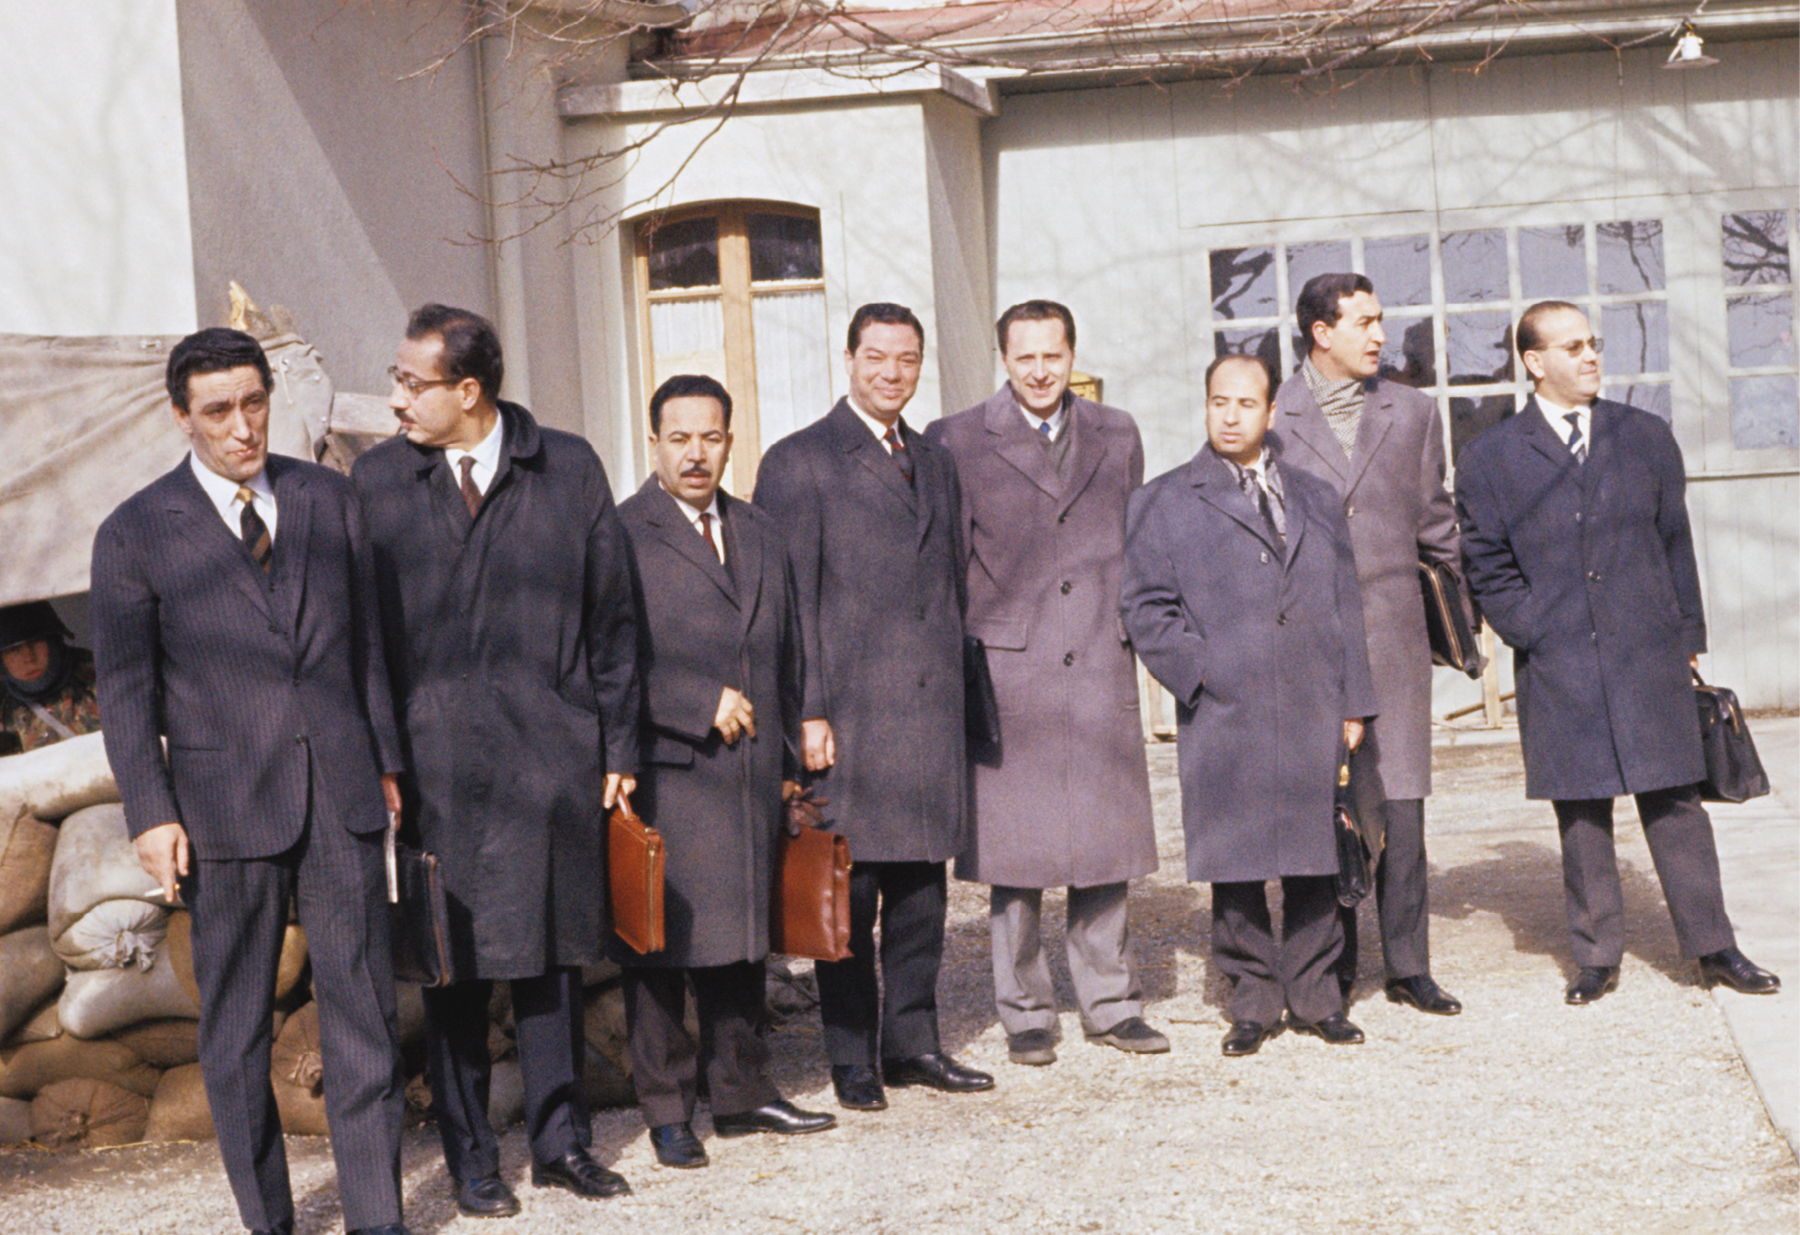 Fotografia. Um grupo de homens, em pé, lado a lado, todos vestindo paletós ou casacos escuros. Em segundo plano, a fachada de uma casa vista parcialmente, contendo entre as paredes janelas e vitrais quadrados.